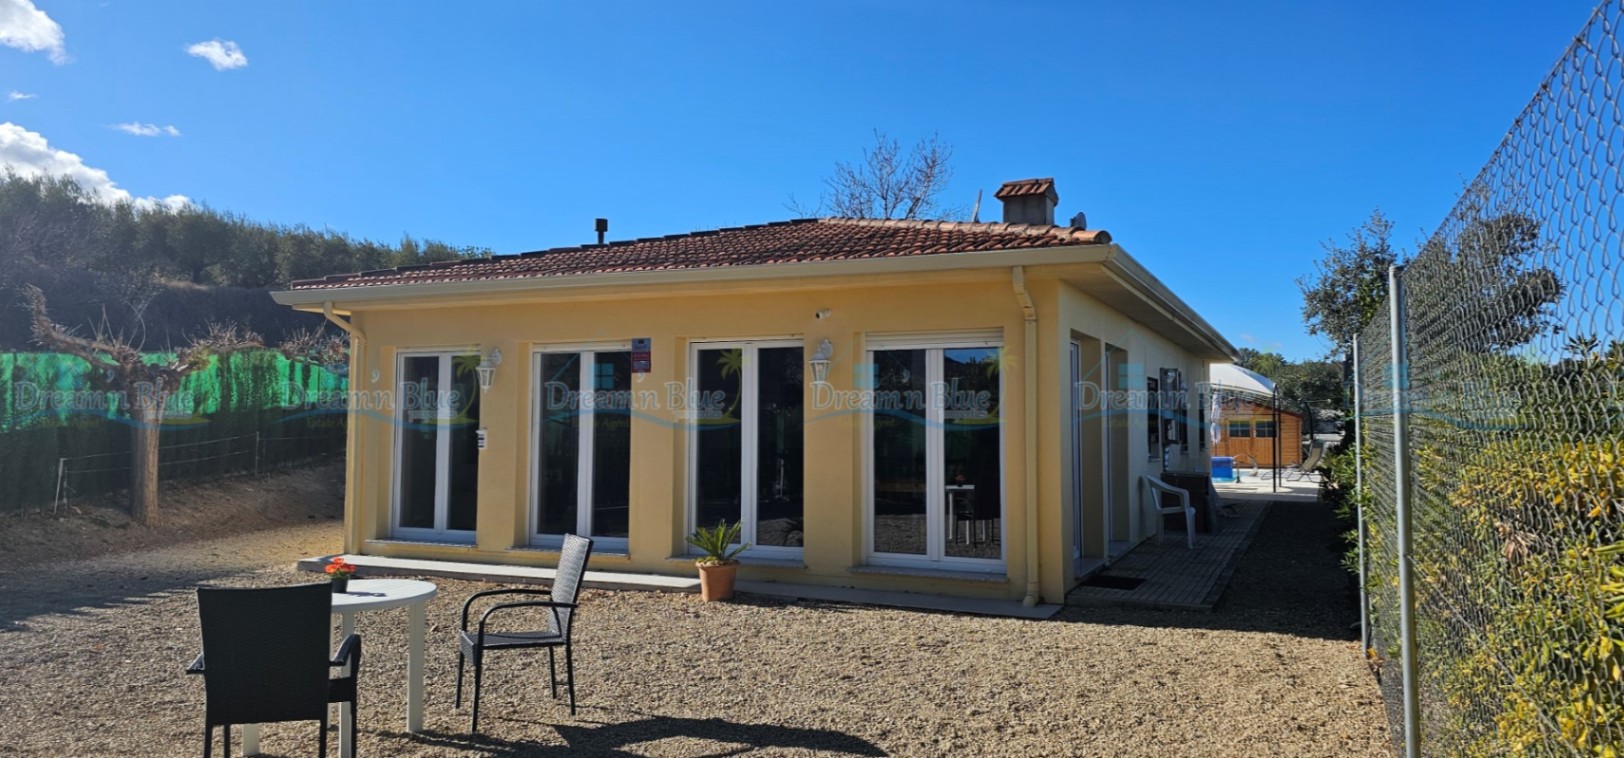 Villa zum Verkauf in der Gegend von Albaida